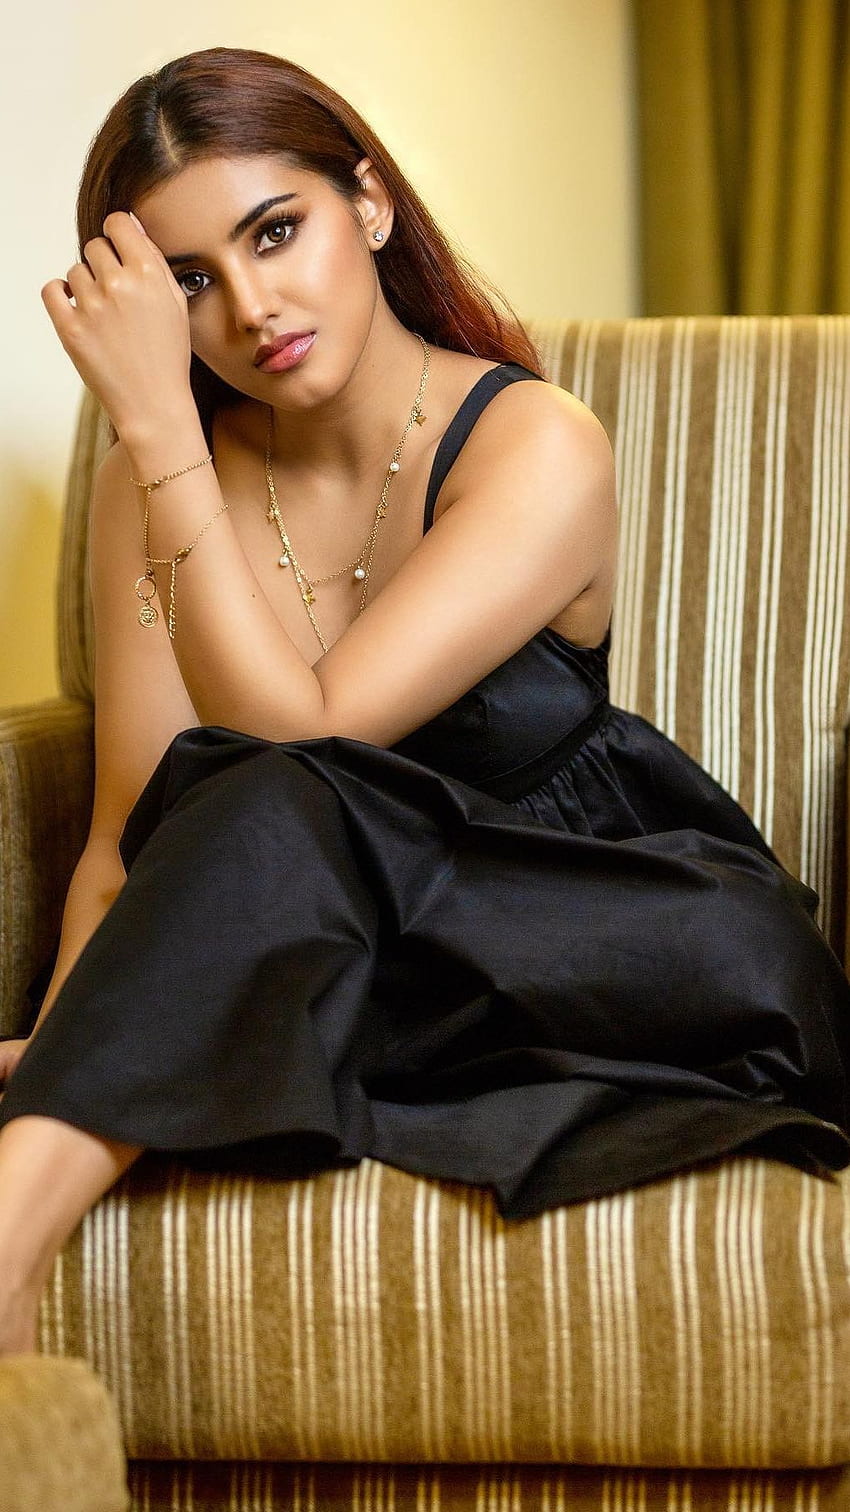 Malavika sharma, aktris telugu, model, dec i wallpaper ponsel HD